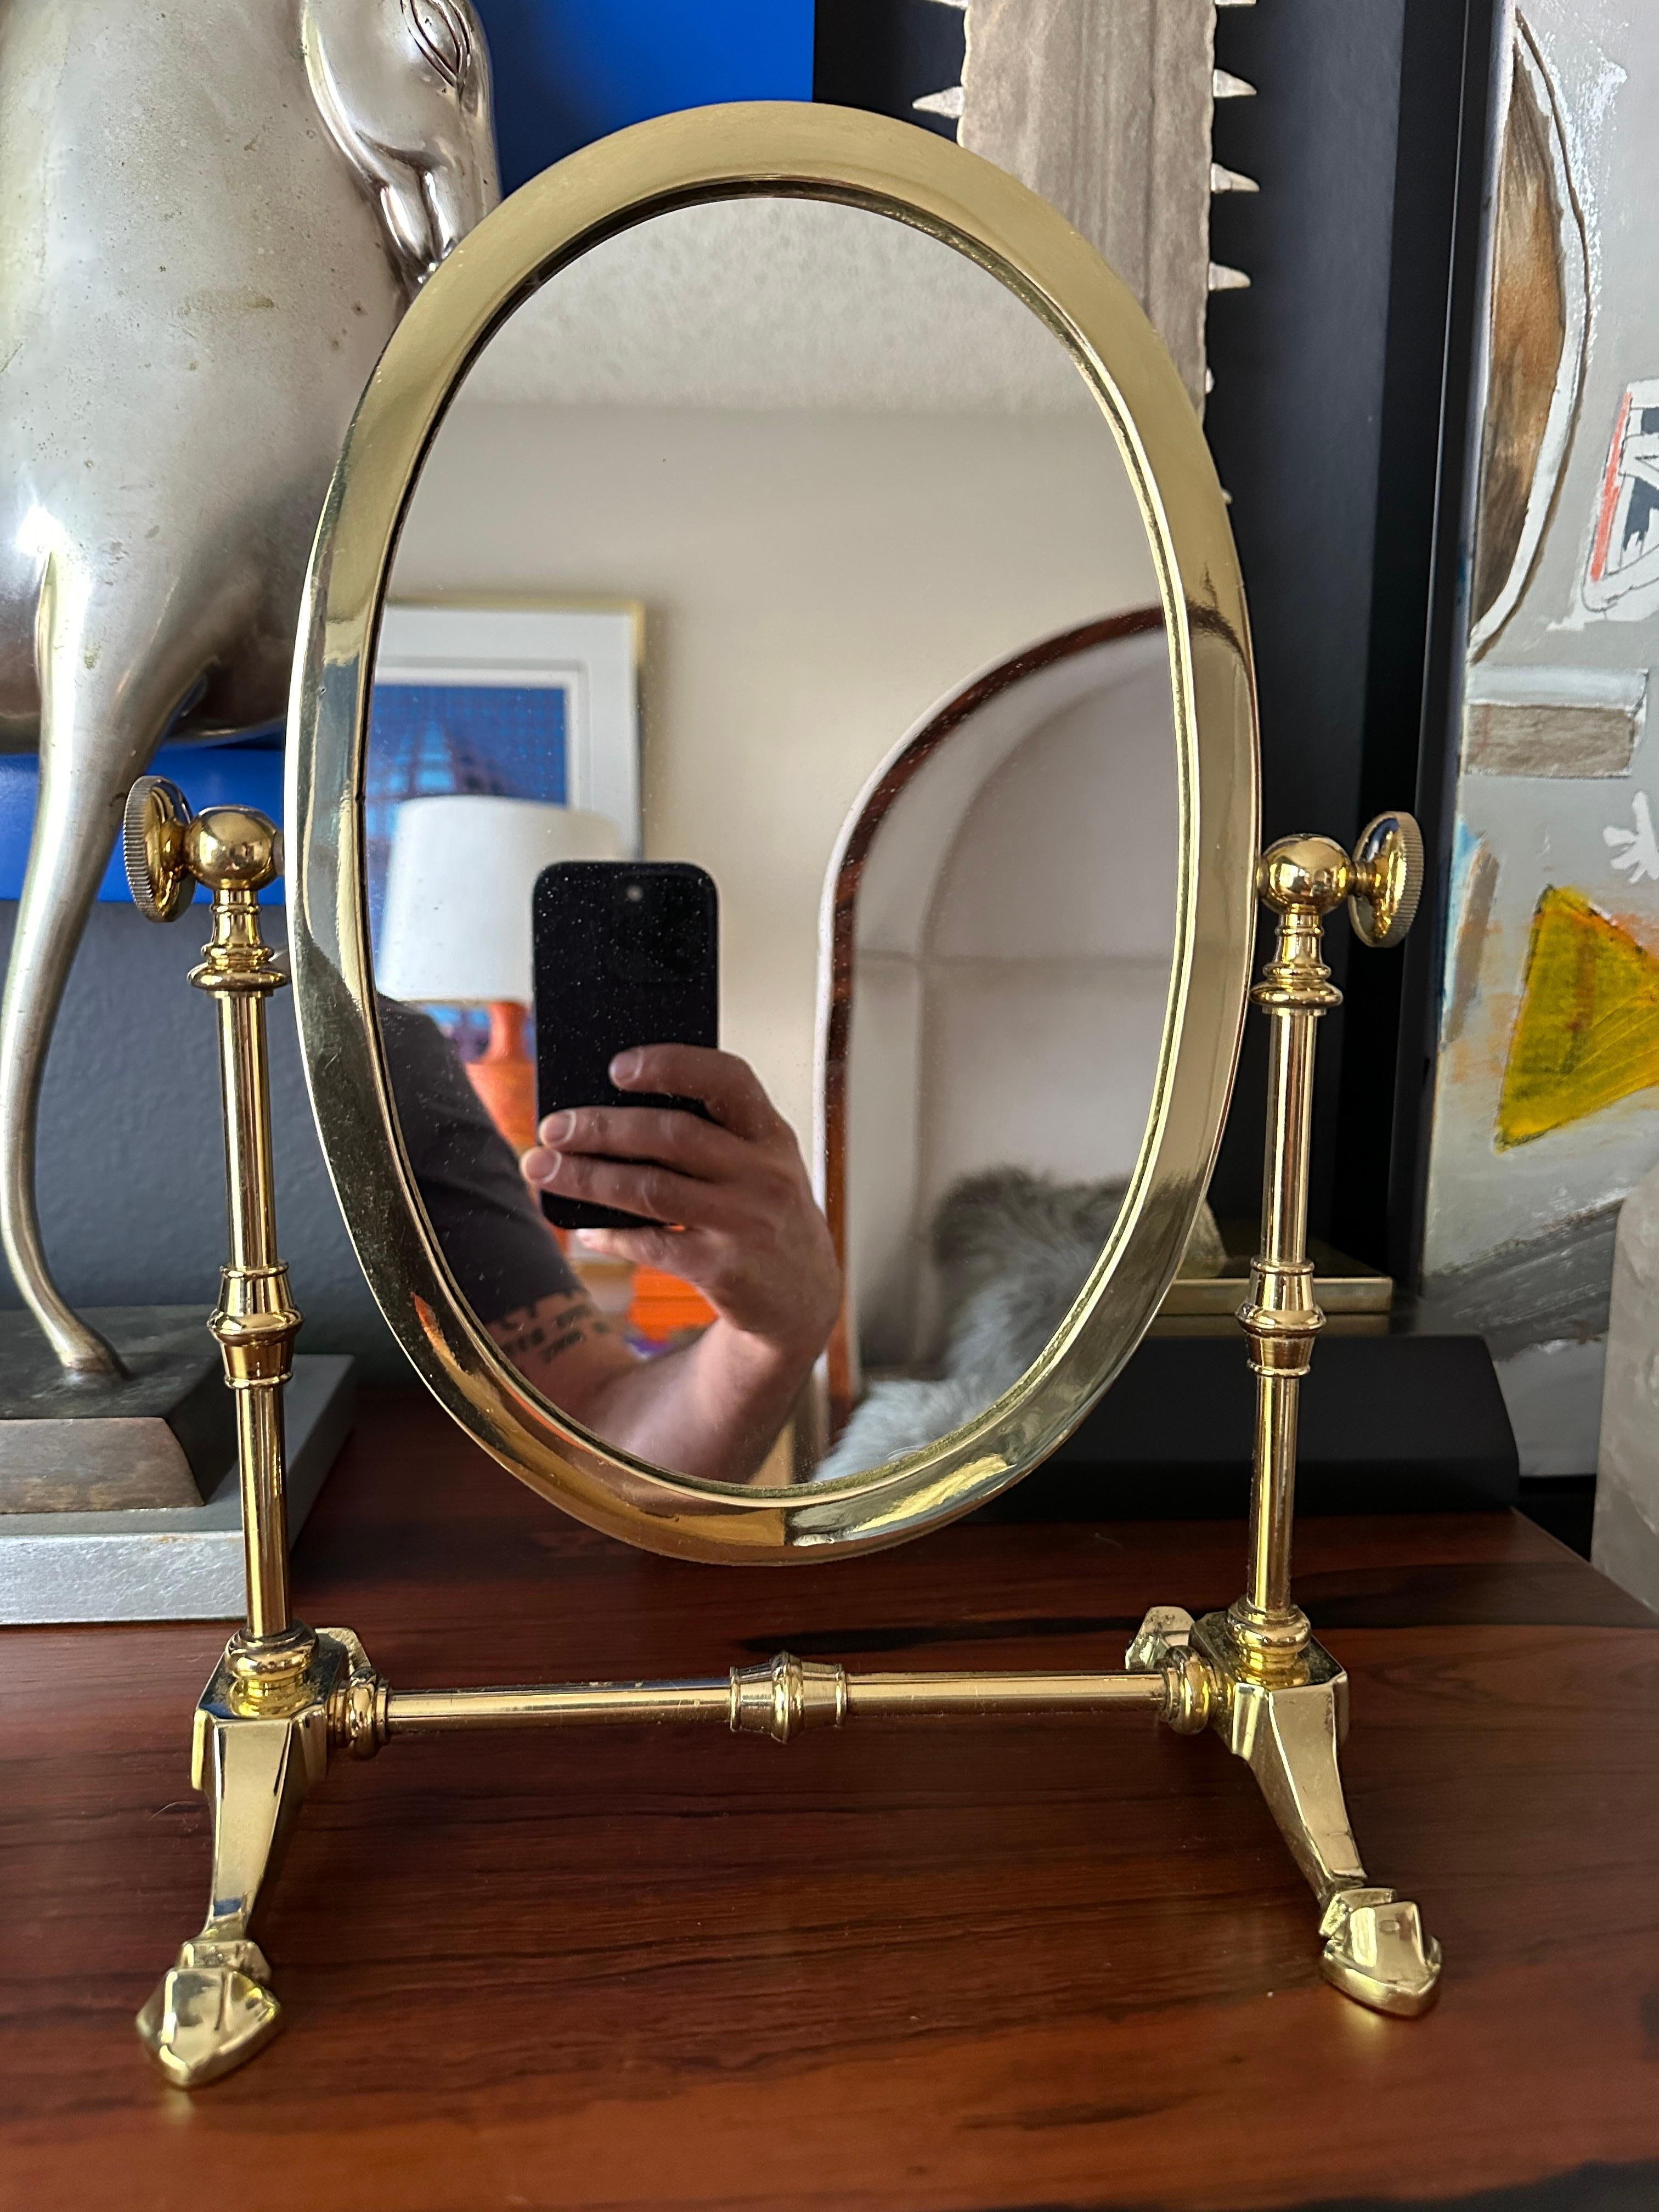 Petit miroir de courtoisie en laiton dans le style de Charles Hollis Jones.
Seul le miroir ovale mesure 7